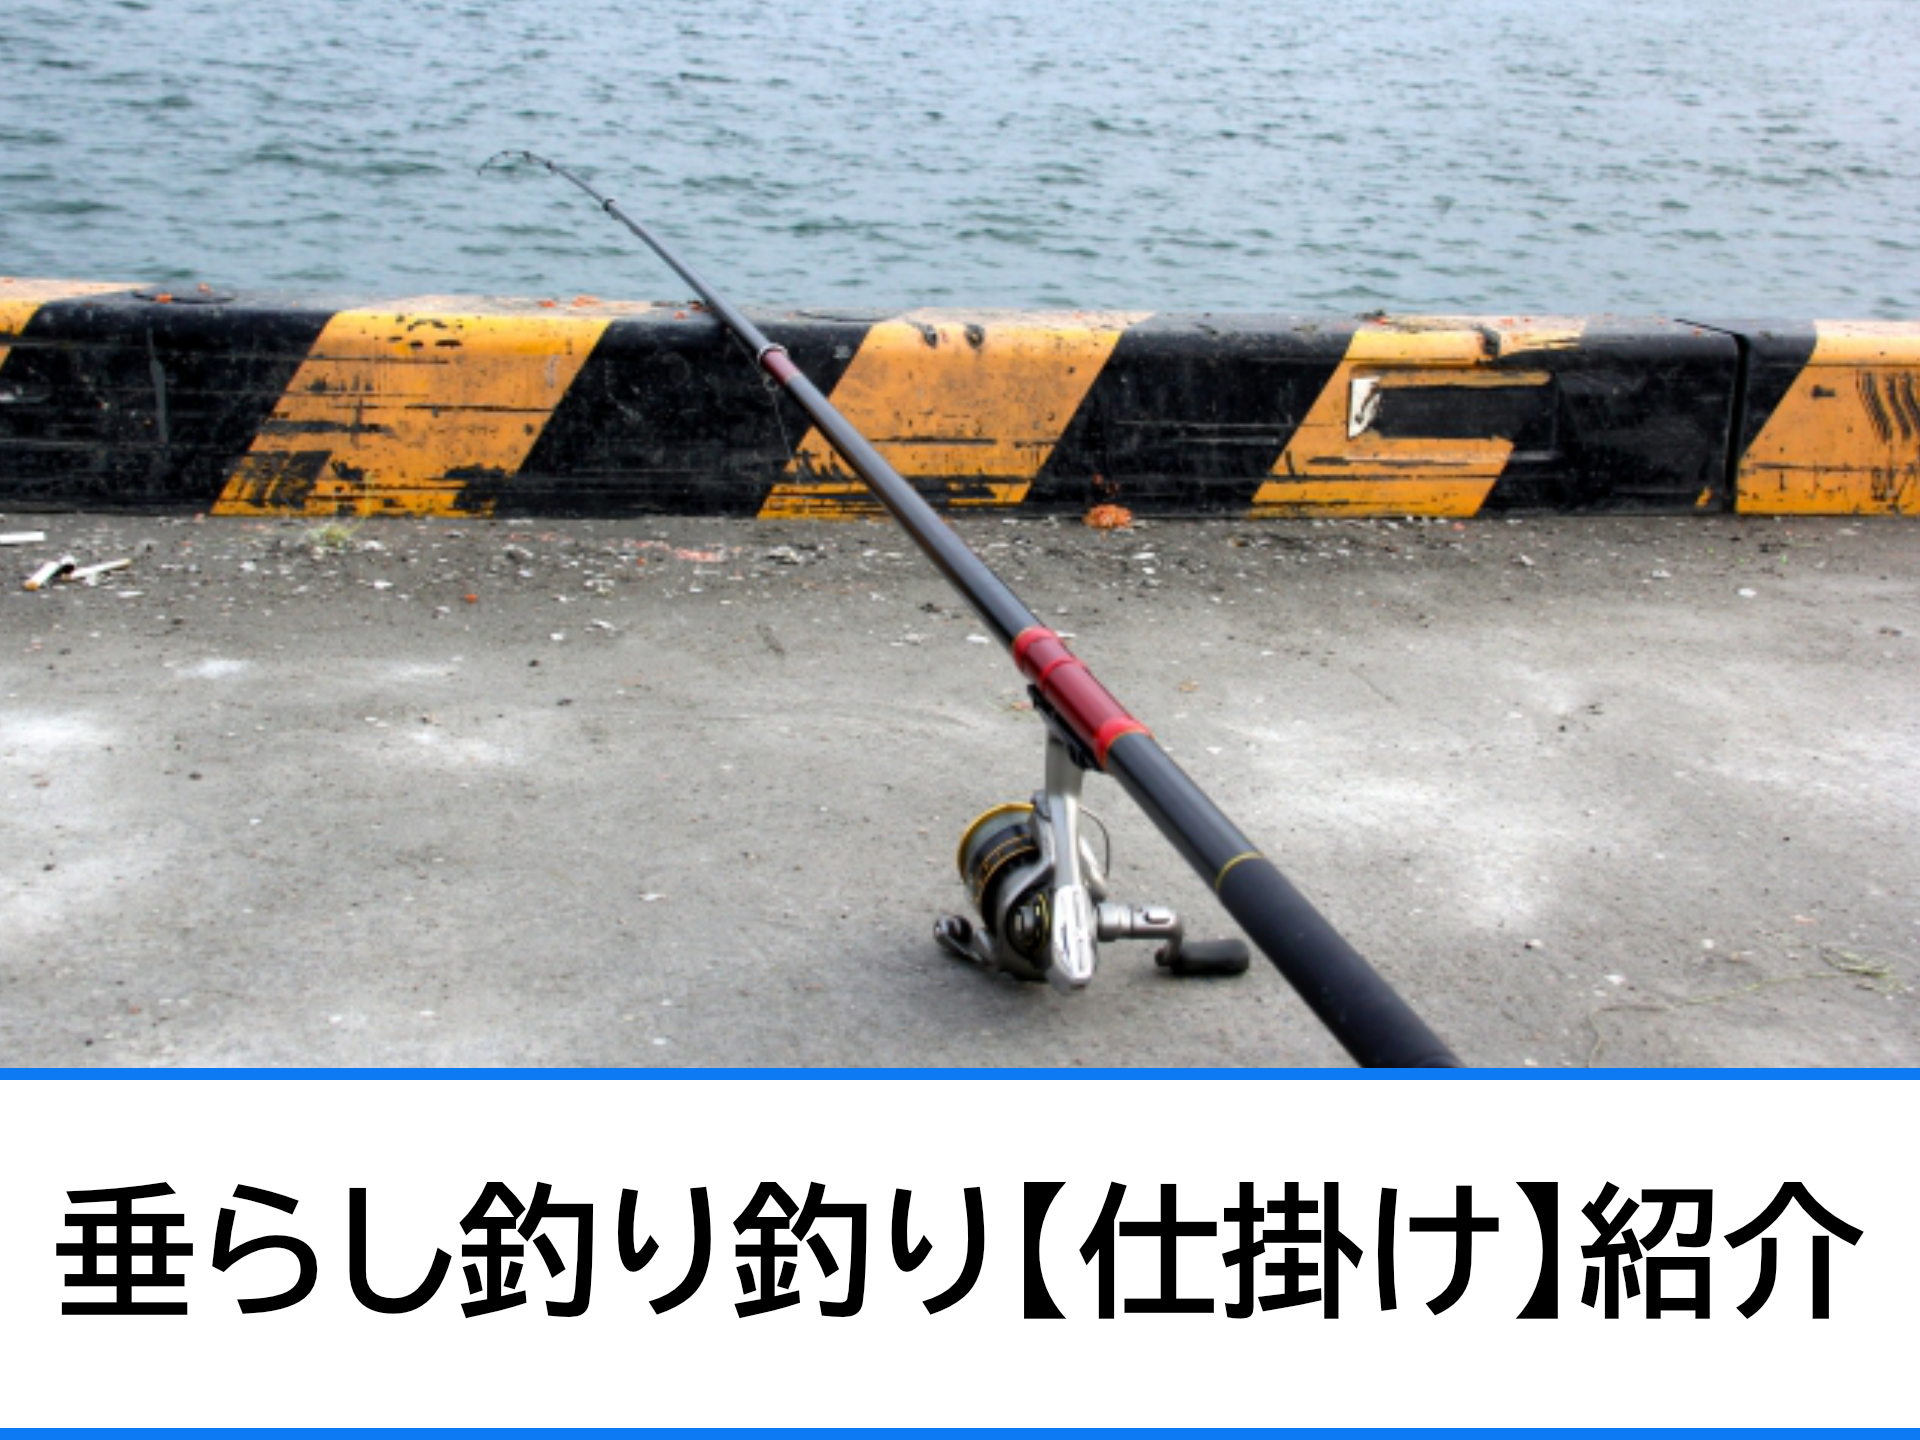 垂らし釣り 仕掛け 紹介 初心者でも簡単にできる 初心者におすすめ 沖縄県の釣りポイント